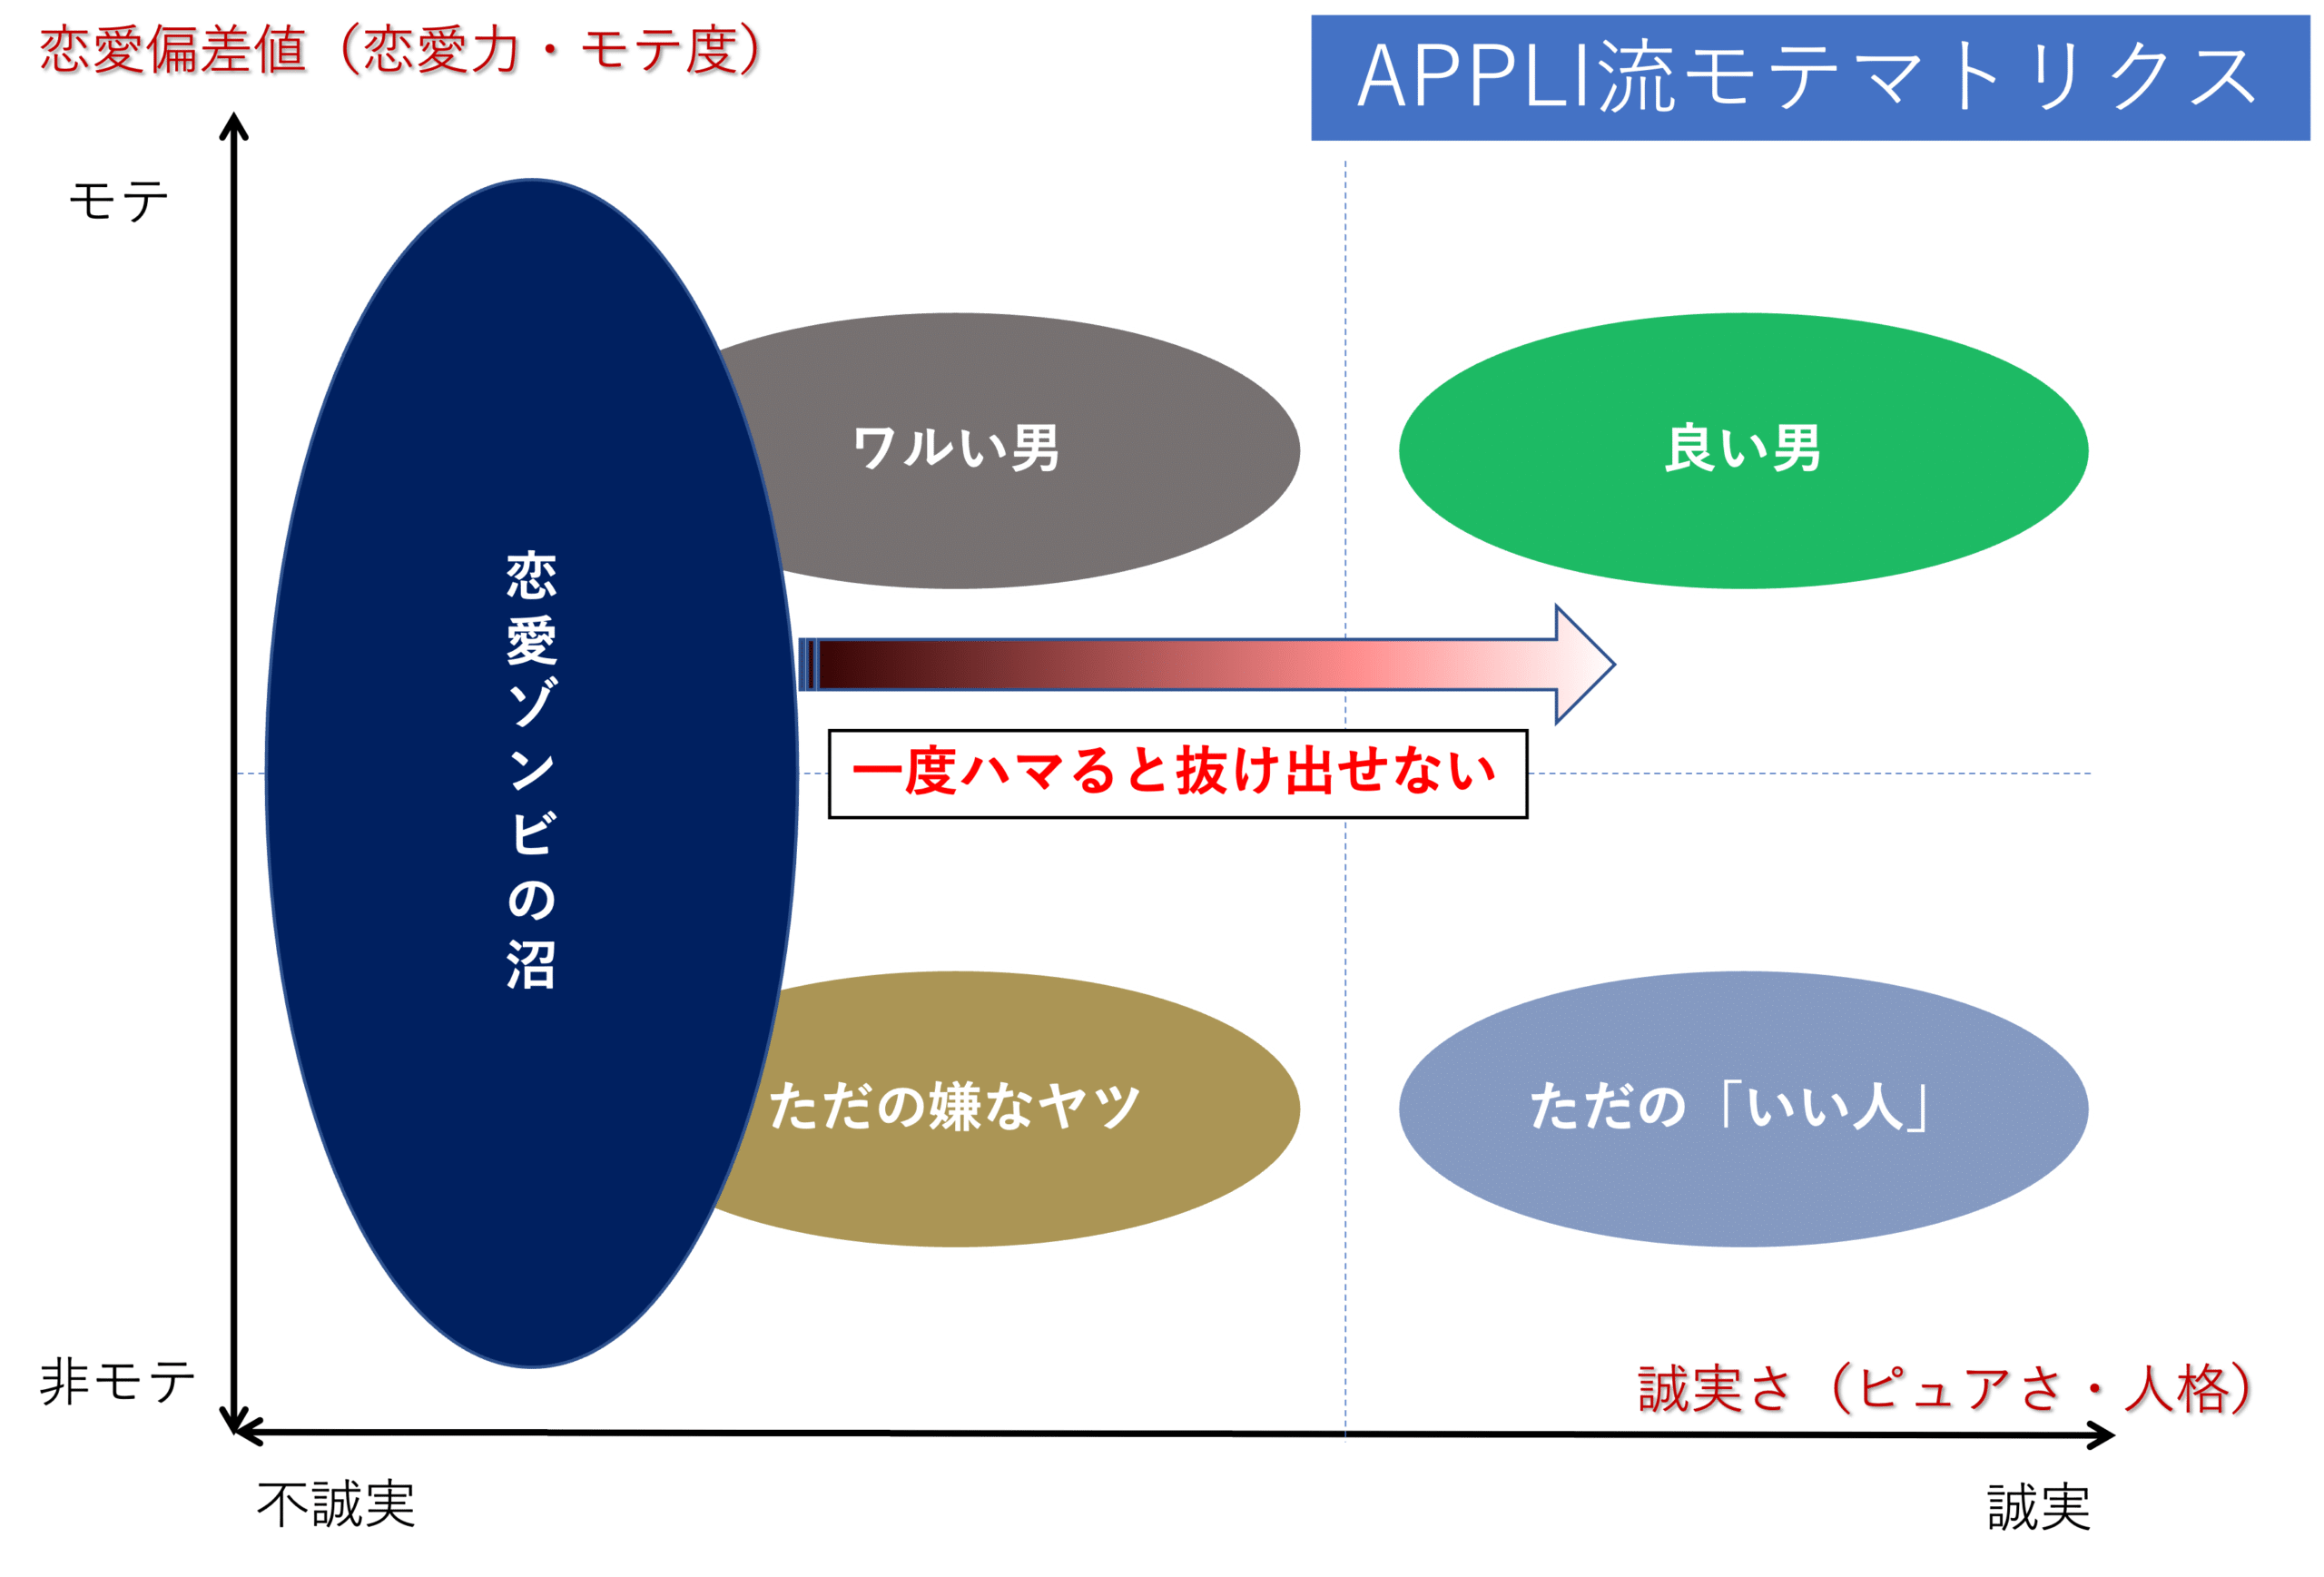 APPLI流モテマトリクス6